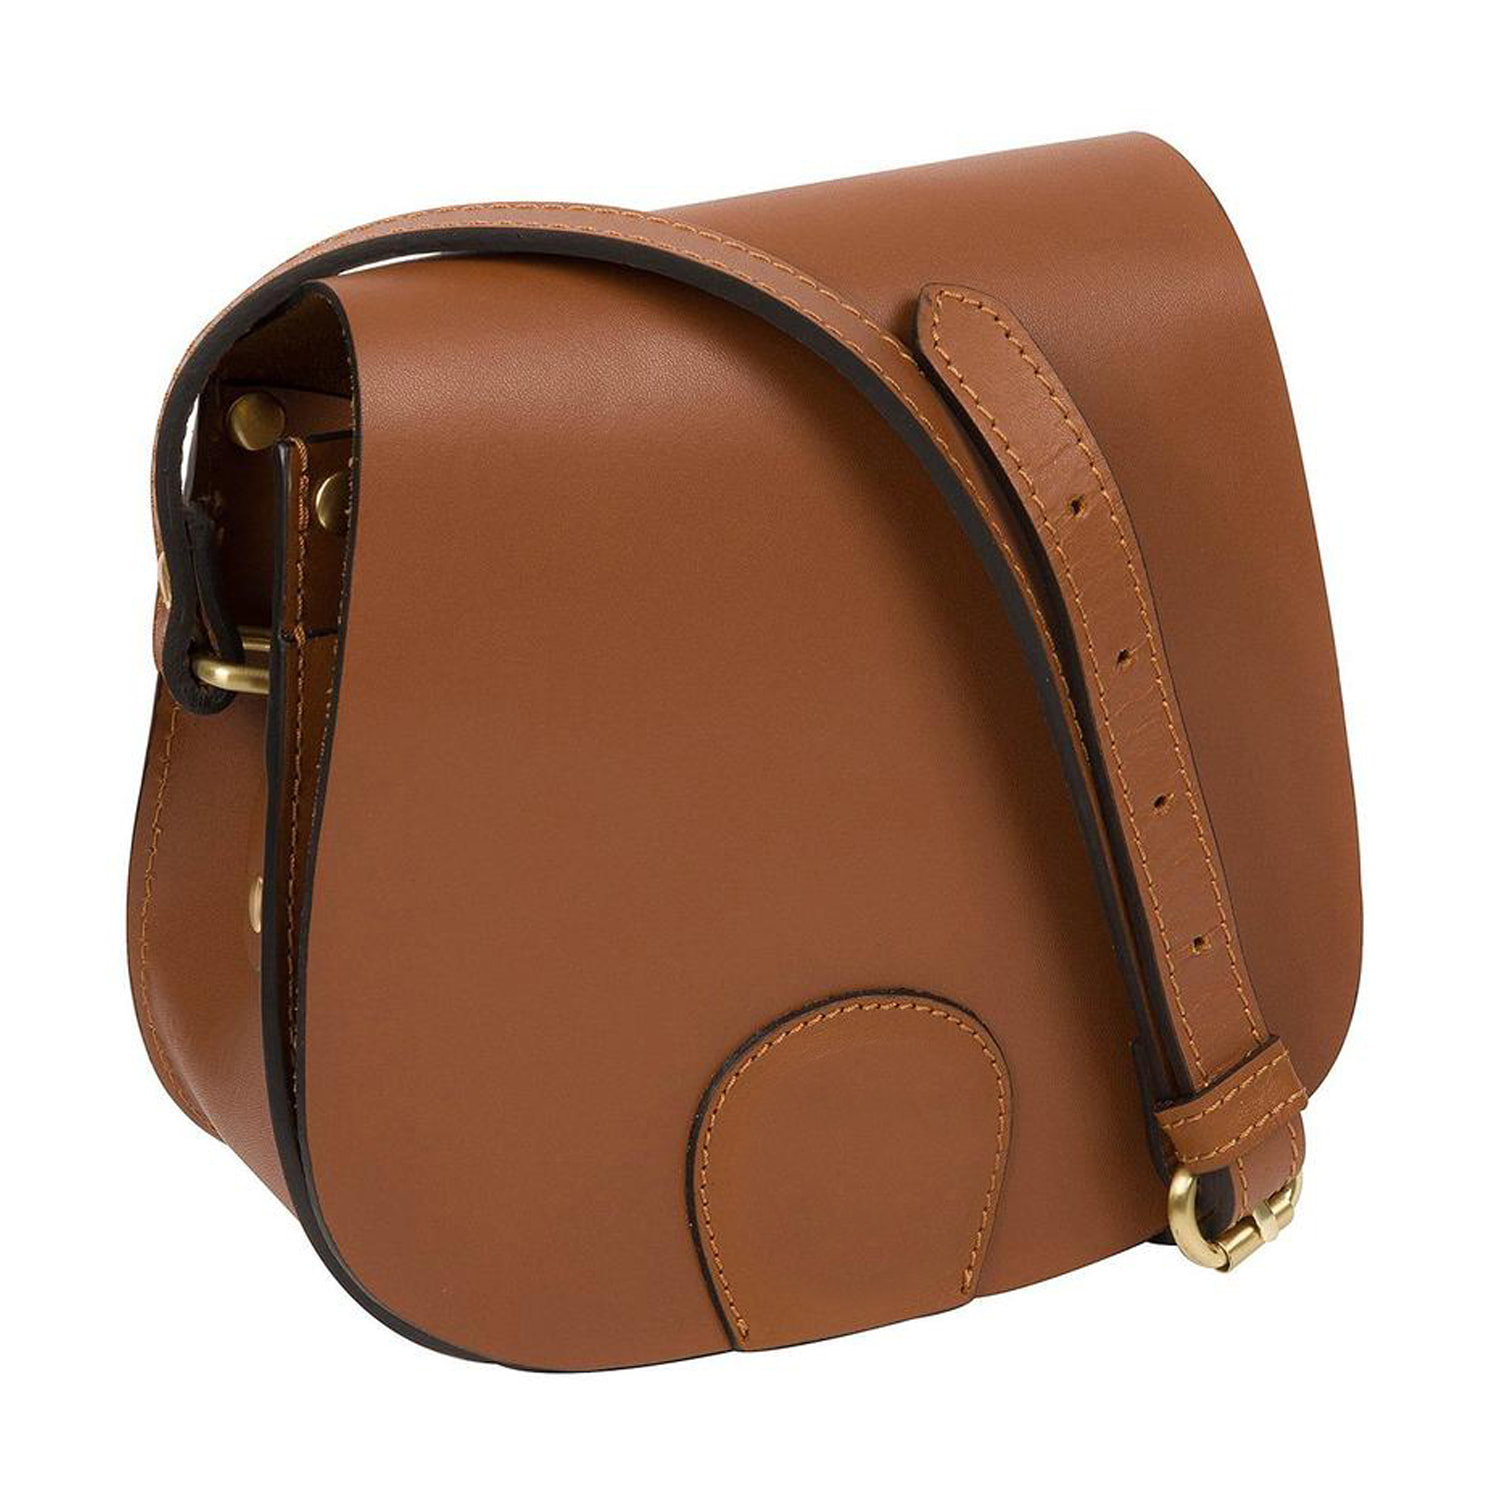 Tan Leather Saddle Bag, Shoulder Bag